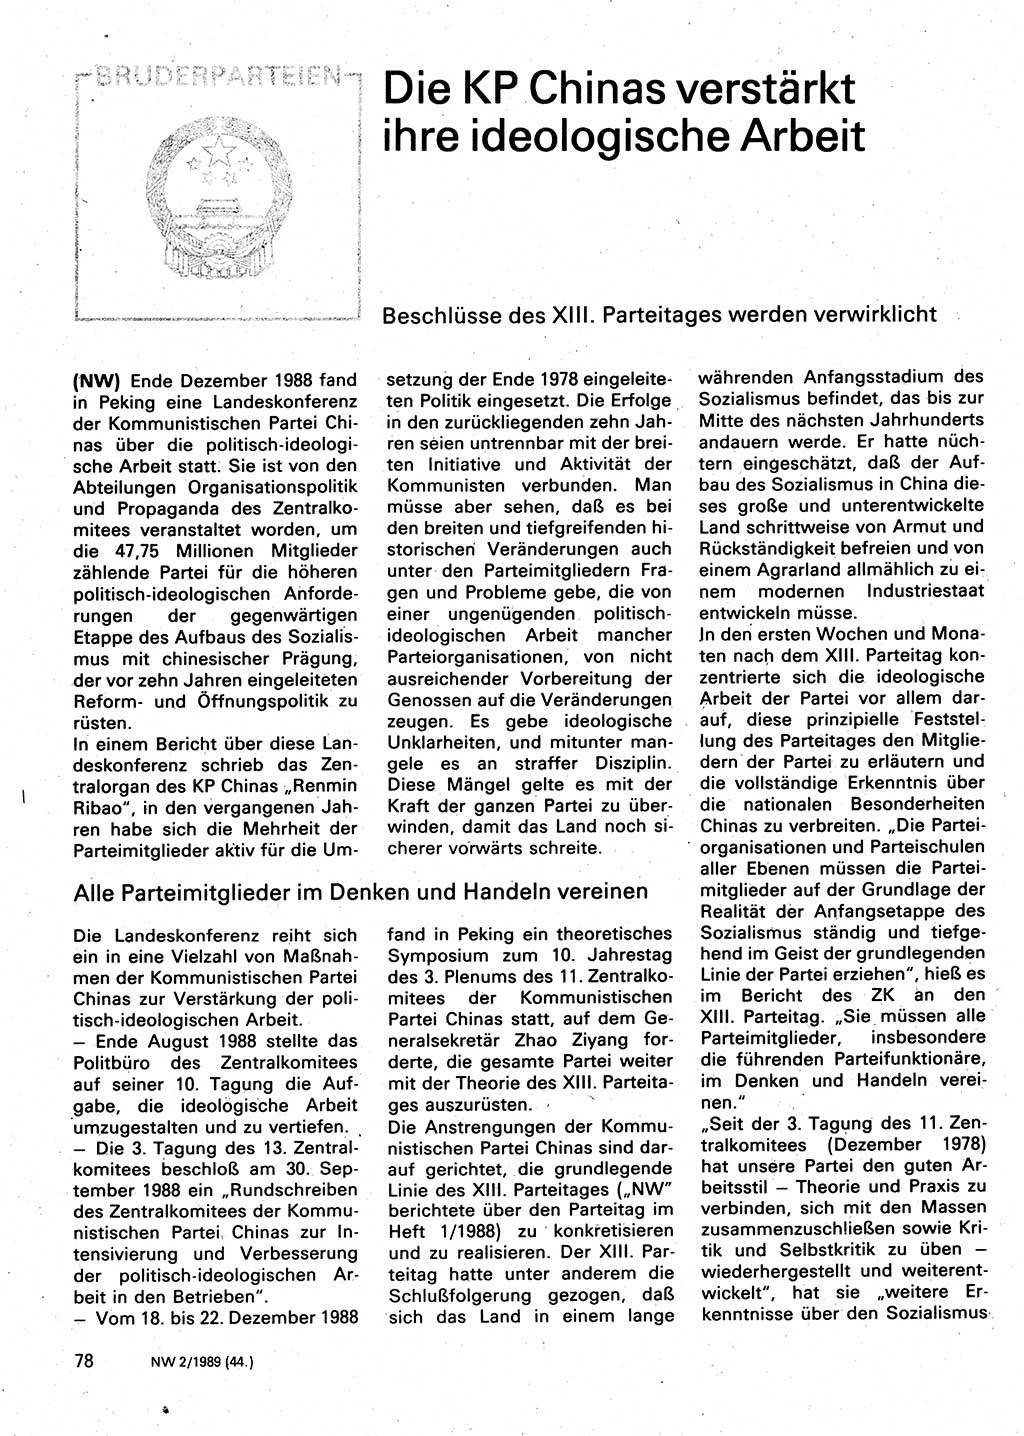 Neuer Weg (NW), Organ des Zentralkomitees (ZK) der SED (Sozialistische Einheitspartei Deutschlands) für Fragen des Parteilebens, 44. Jahrgang [Deutsche Demokratische Republik (DDR)] 1989, Seite 78 (NW ZK SED DDR 1989, S. 78)